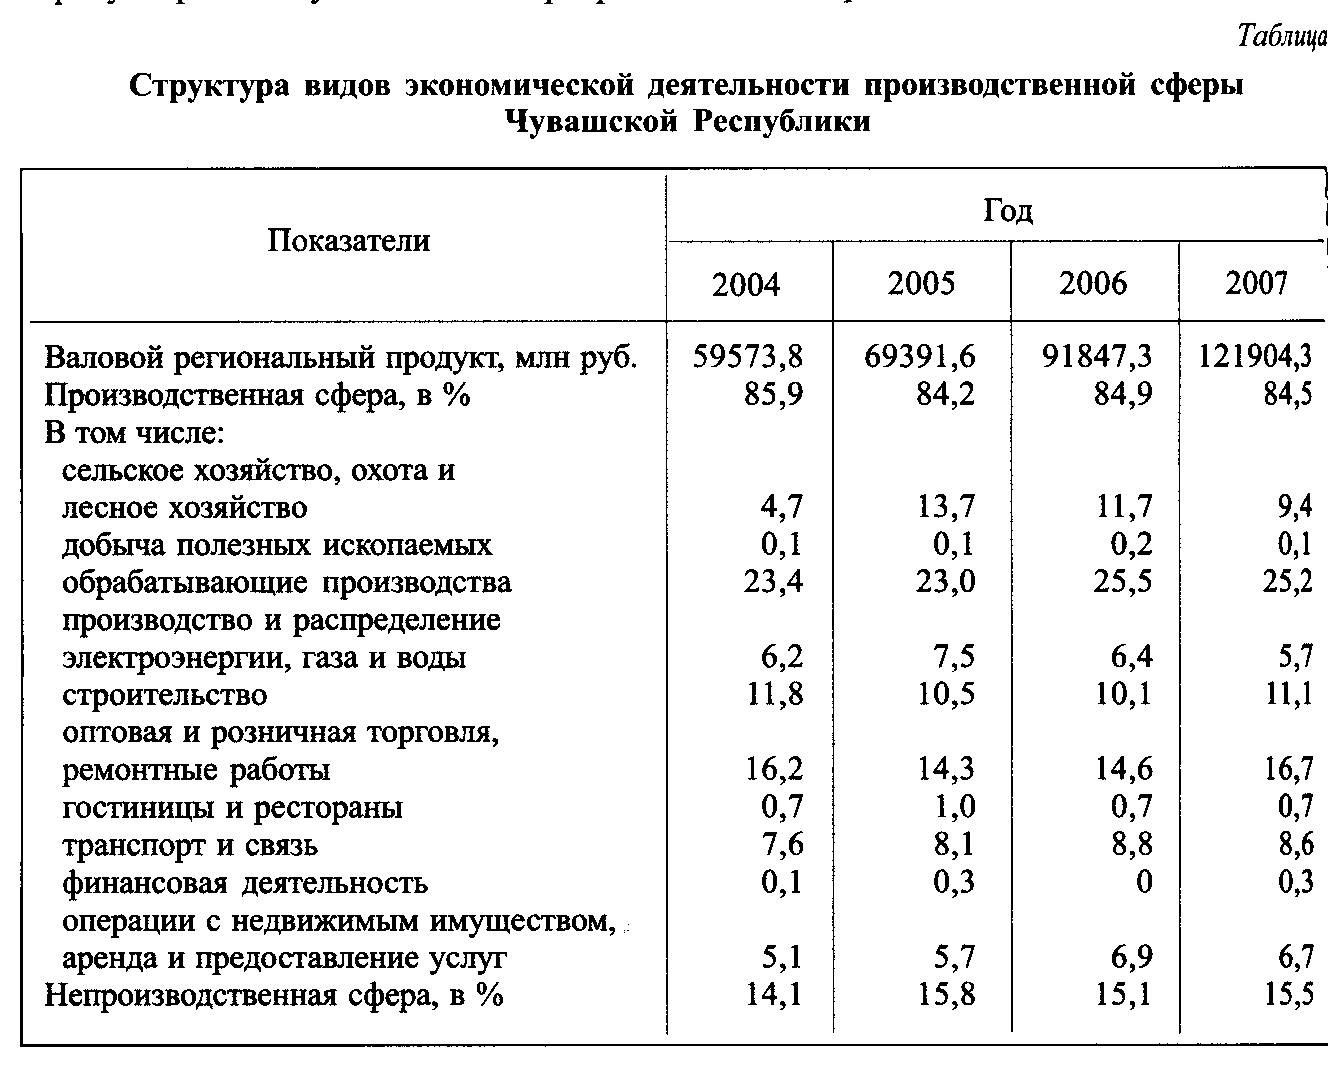 "Структура видов экономической деятельности производственной сферы Чувашской Республики."